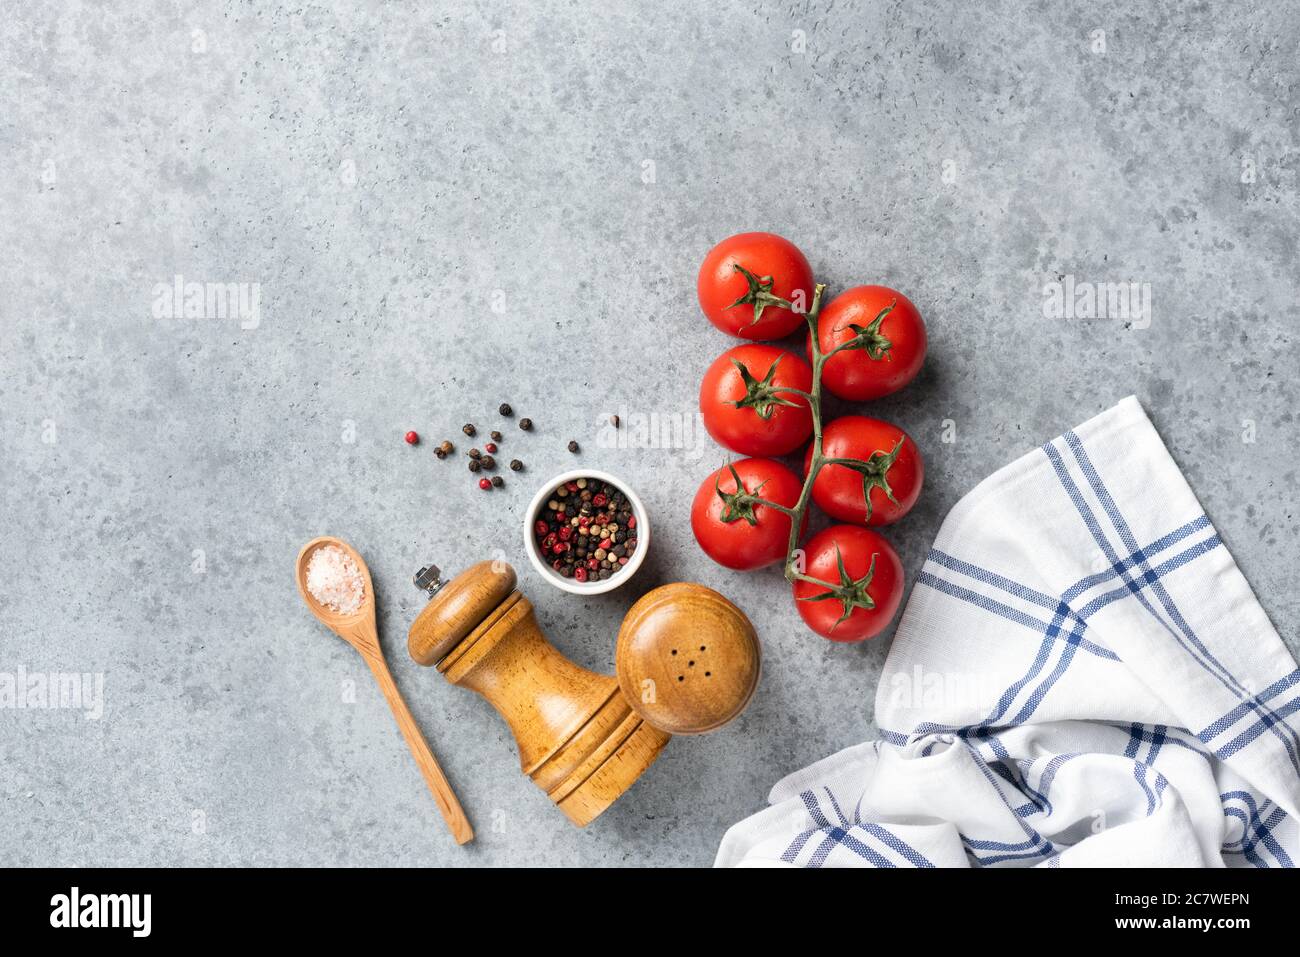 Cà chua và gia vị chính là nguồn cảm hứng cho những món ăn thơm ngon và đầy màu sắc. Chúng tôi cam kết sử dụng những nguyên liệu tươi ngon nhất để tạo ra những món ăn đặc sắc nhất. Hãy để chúng tôi mang đến cho bạn những trải nghiệm ẩm thực đáng nhớ.